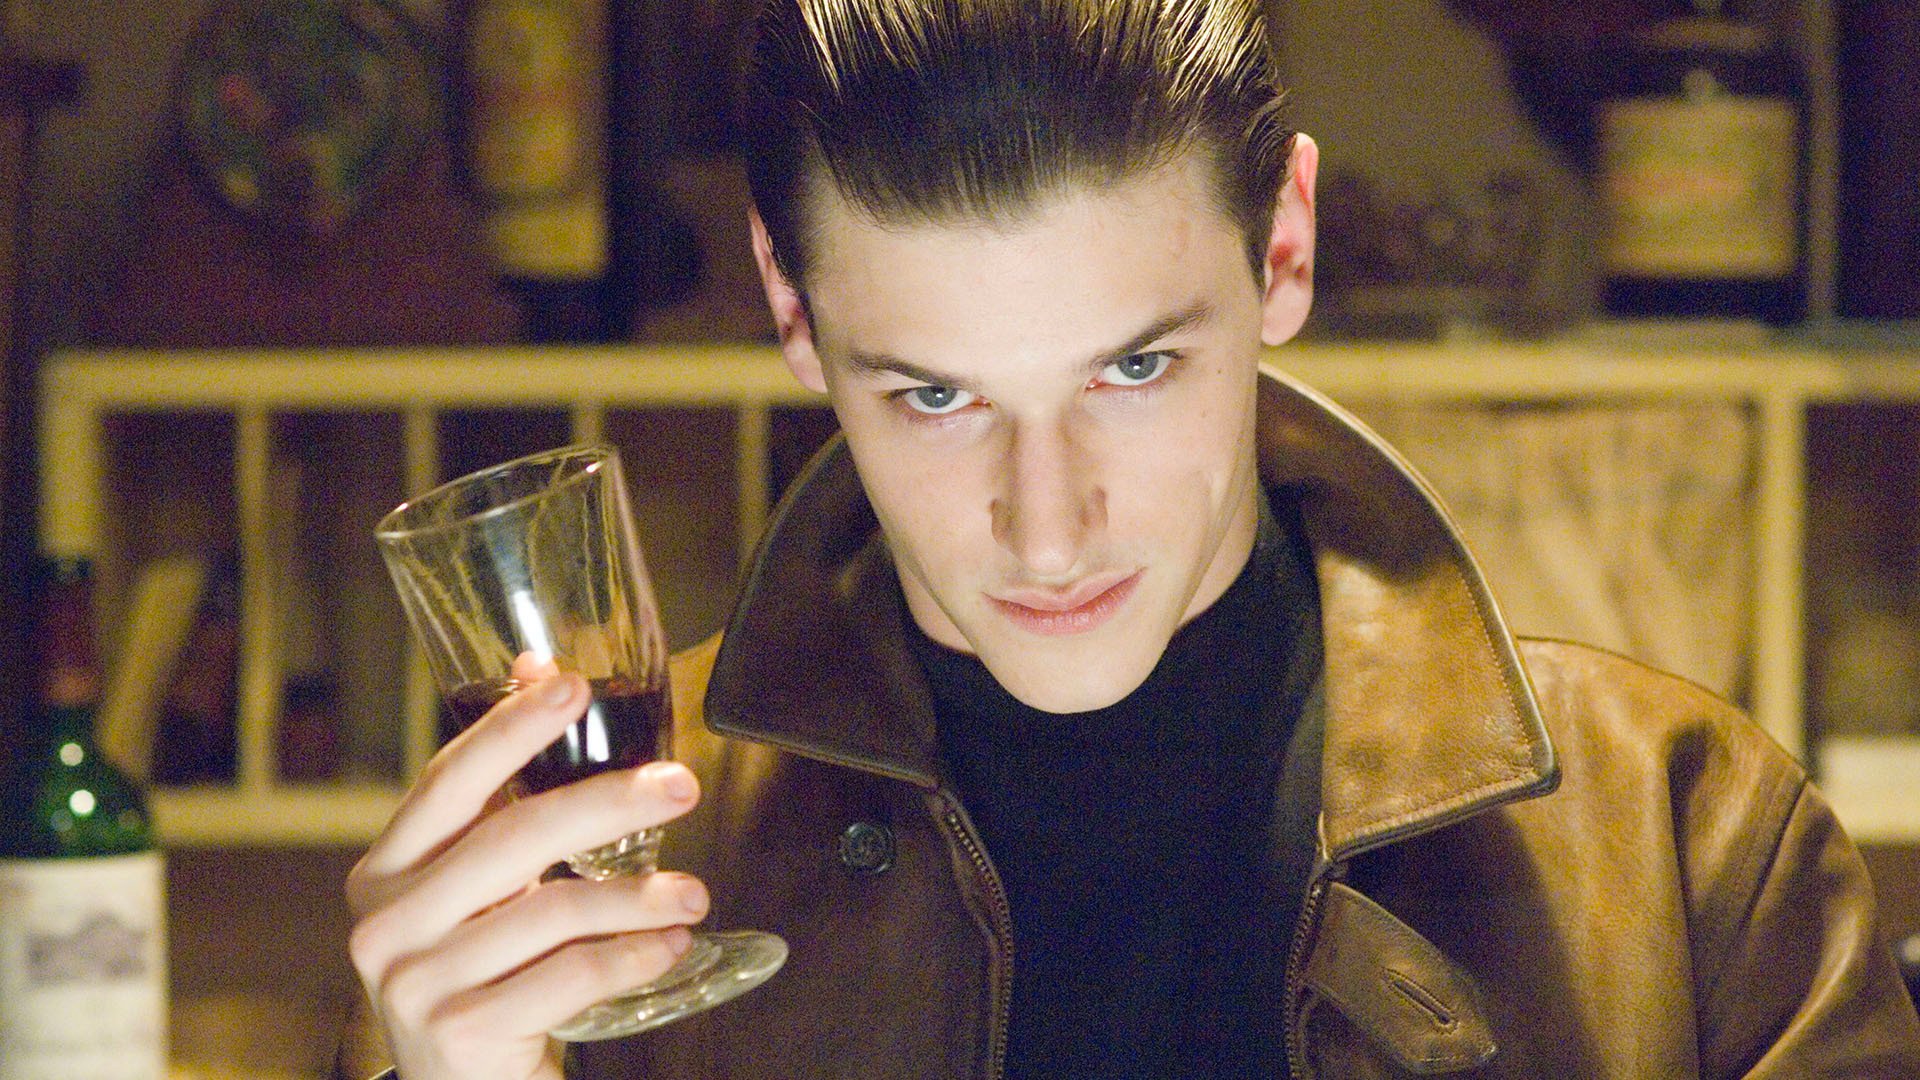 Imagem mostra um homem de jaqueta marrom, segurando um copo de vinho e olhando para a câmera.